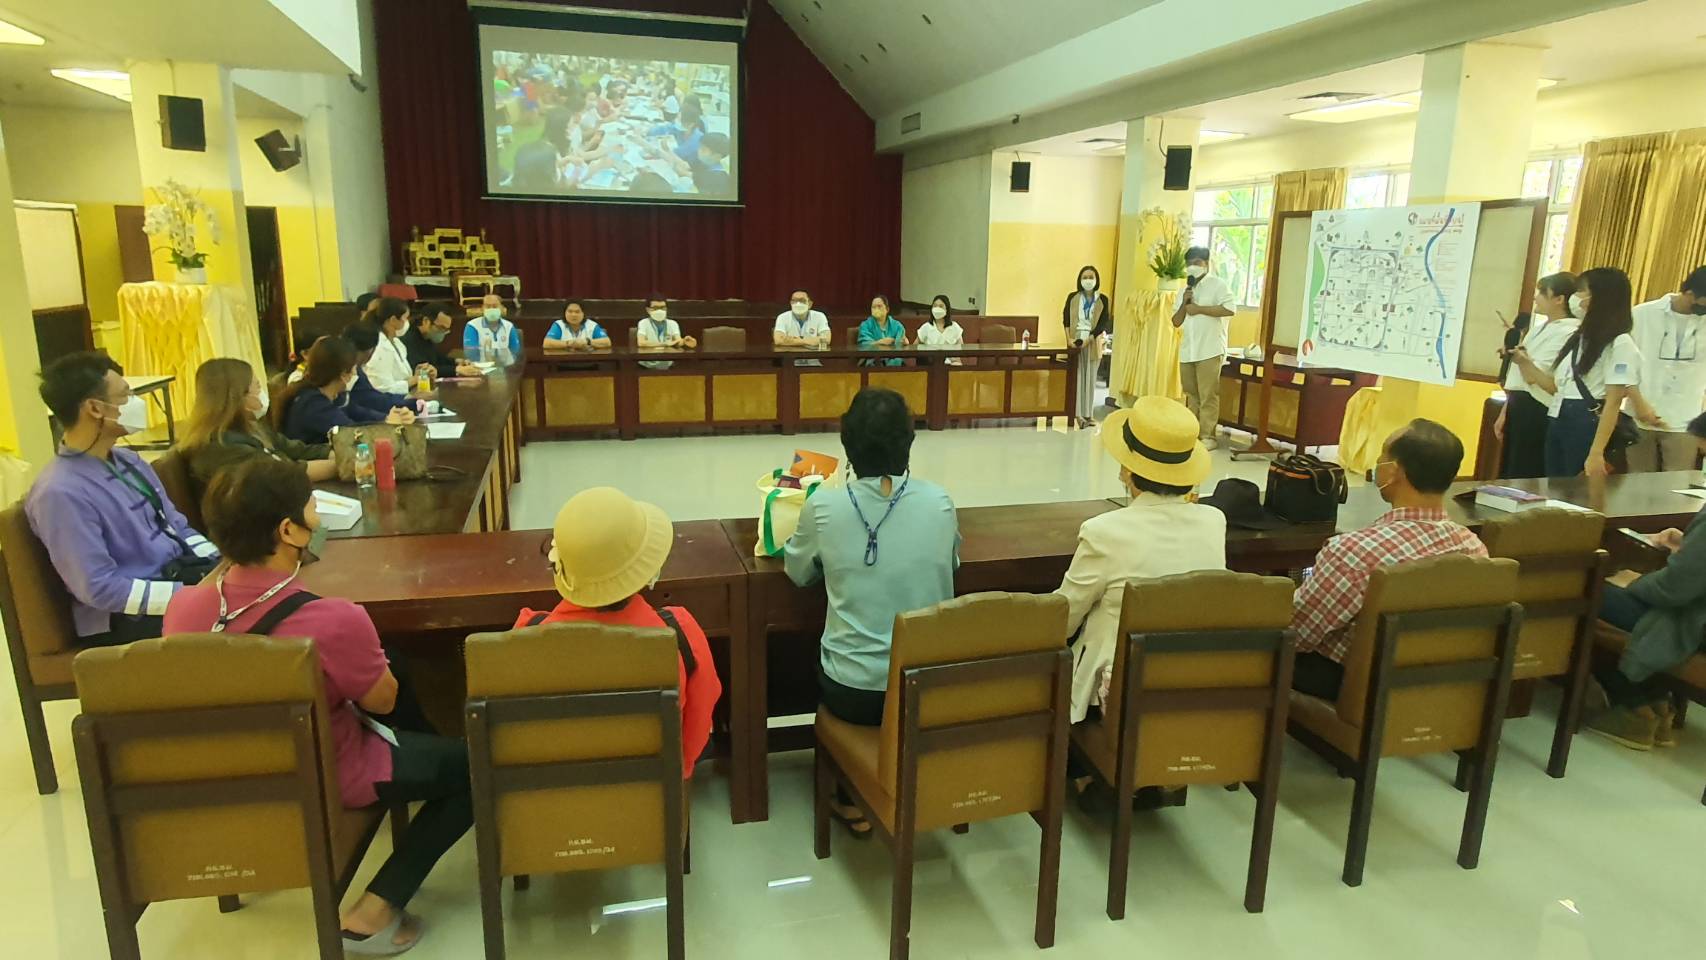 คณะผู้เข้าร่วมกิจกรรม  แอ่วเวียน เฮียนฮู้เวียง  โครงการ Chiang Mai Learning City เข้าเยี่ยมชมหอสมุดแห่งชาติรัชมังคลาภิเษก เชียงใหม่